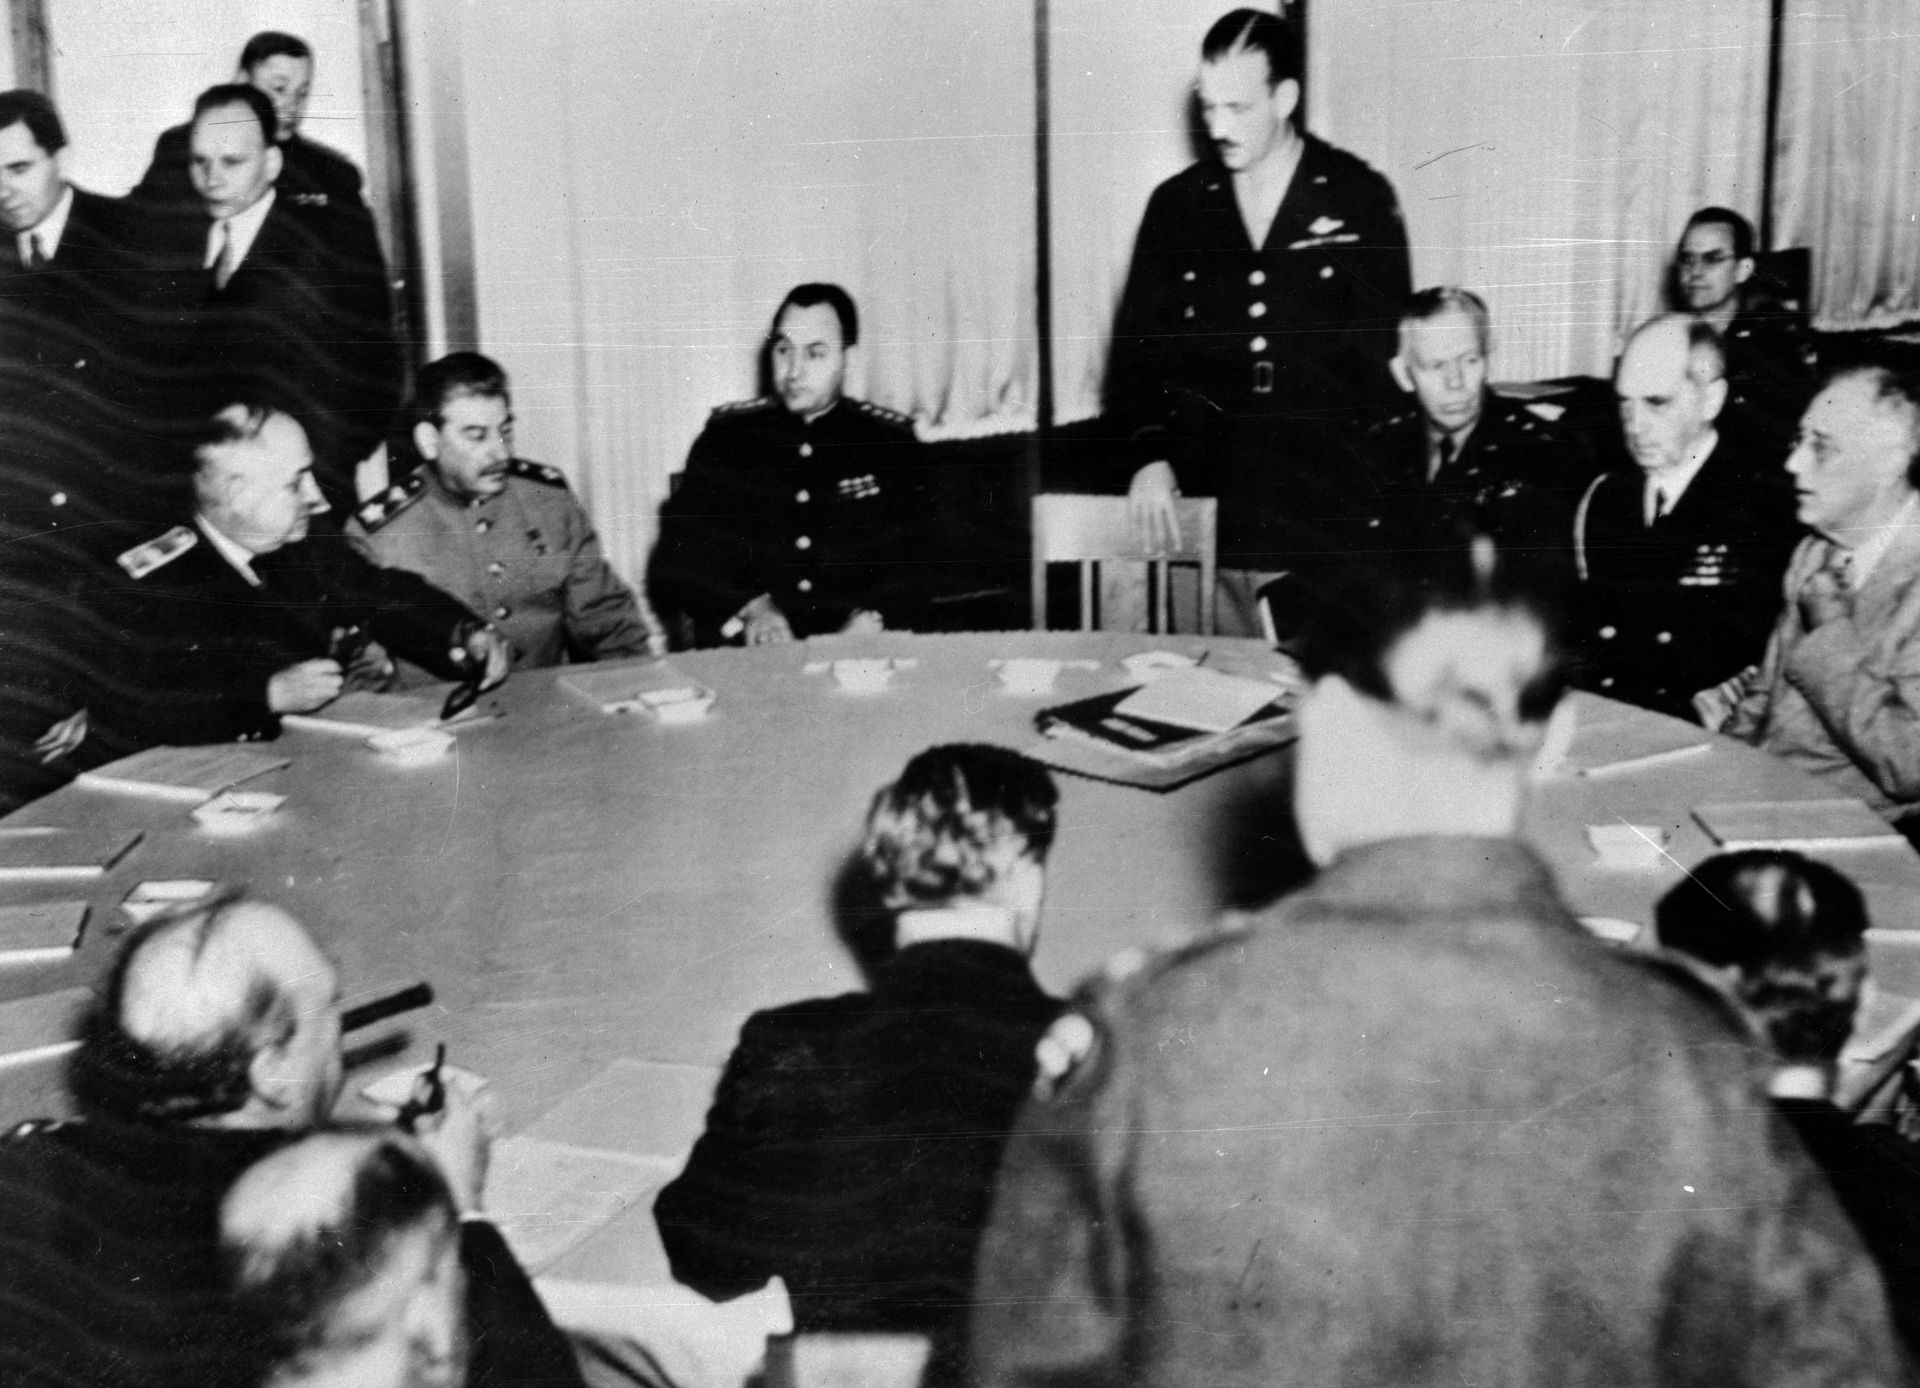 Американският президент Рузвелт (1882 - 1945), вдясно, с адмирал Уилям Д. Лехи и генерал Джордж К. Маршал на конференцията в Ялта през 1945 г.  Сталин, вляво от центъра на масата, и Чърчил, са с гръб към фотообектива